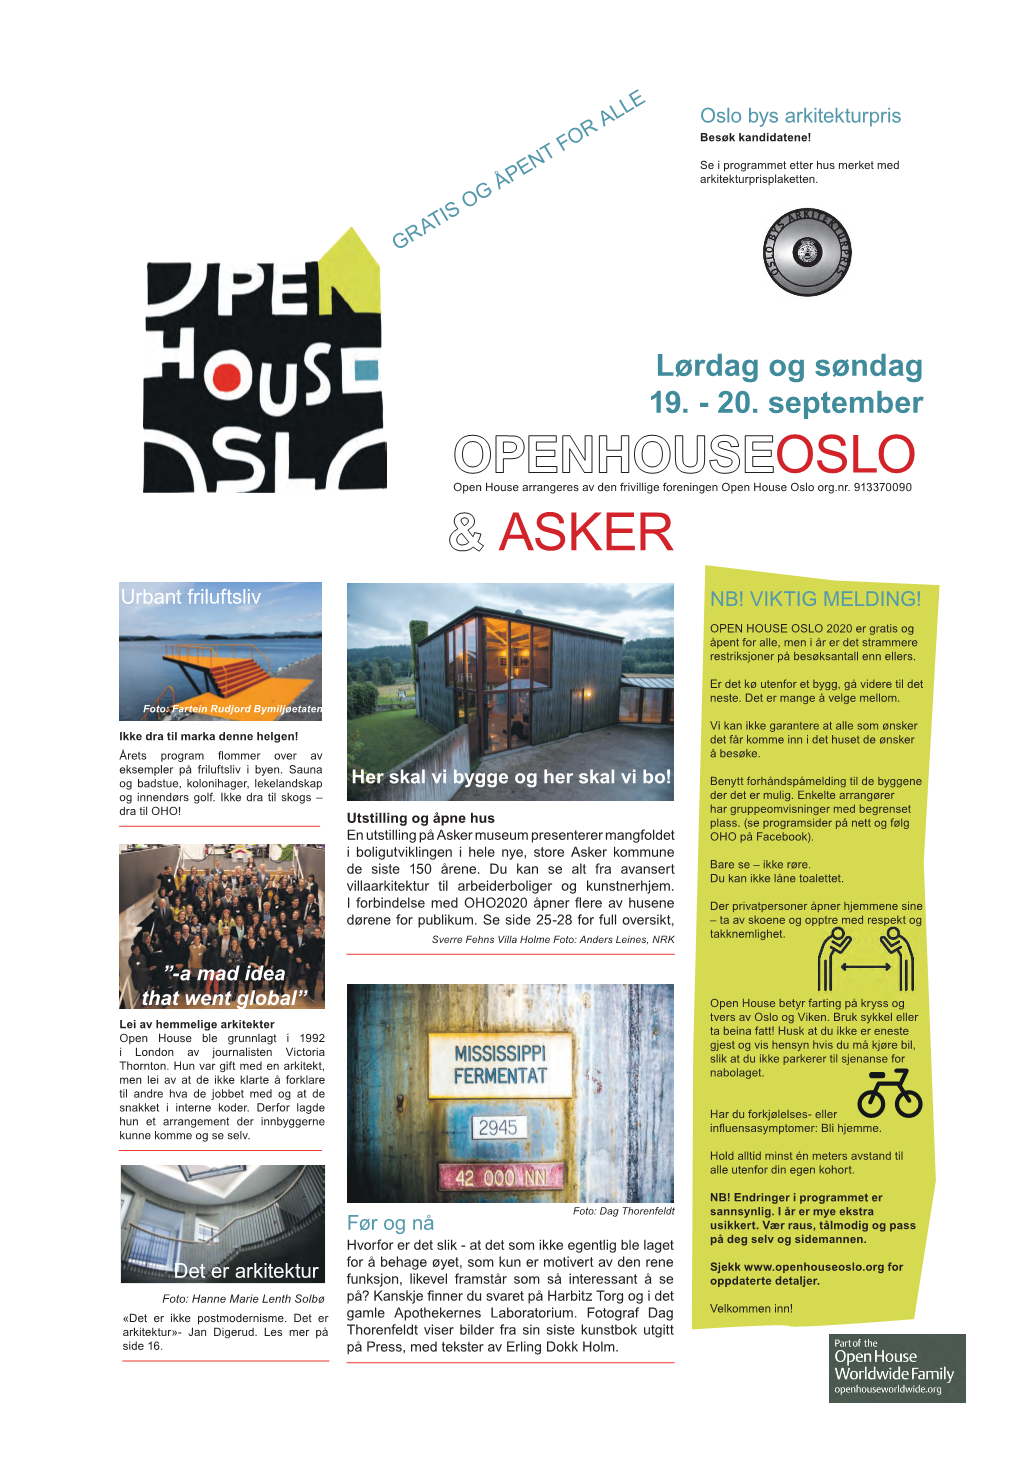 Openhouseoslo & Asker